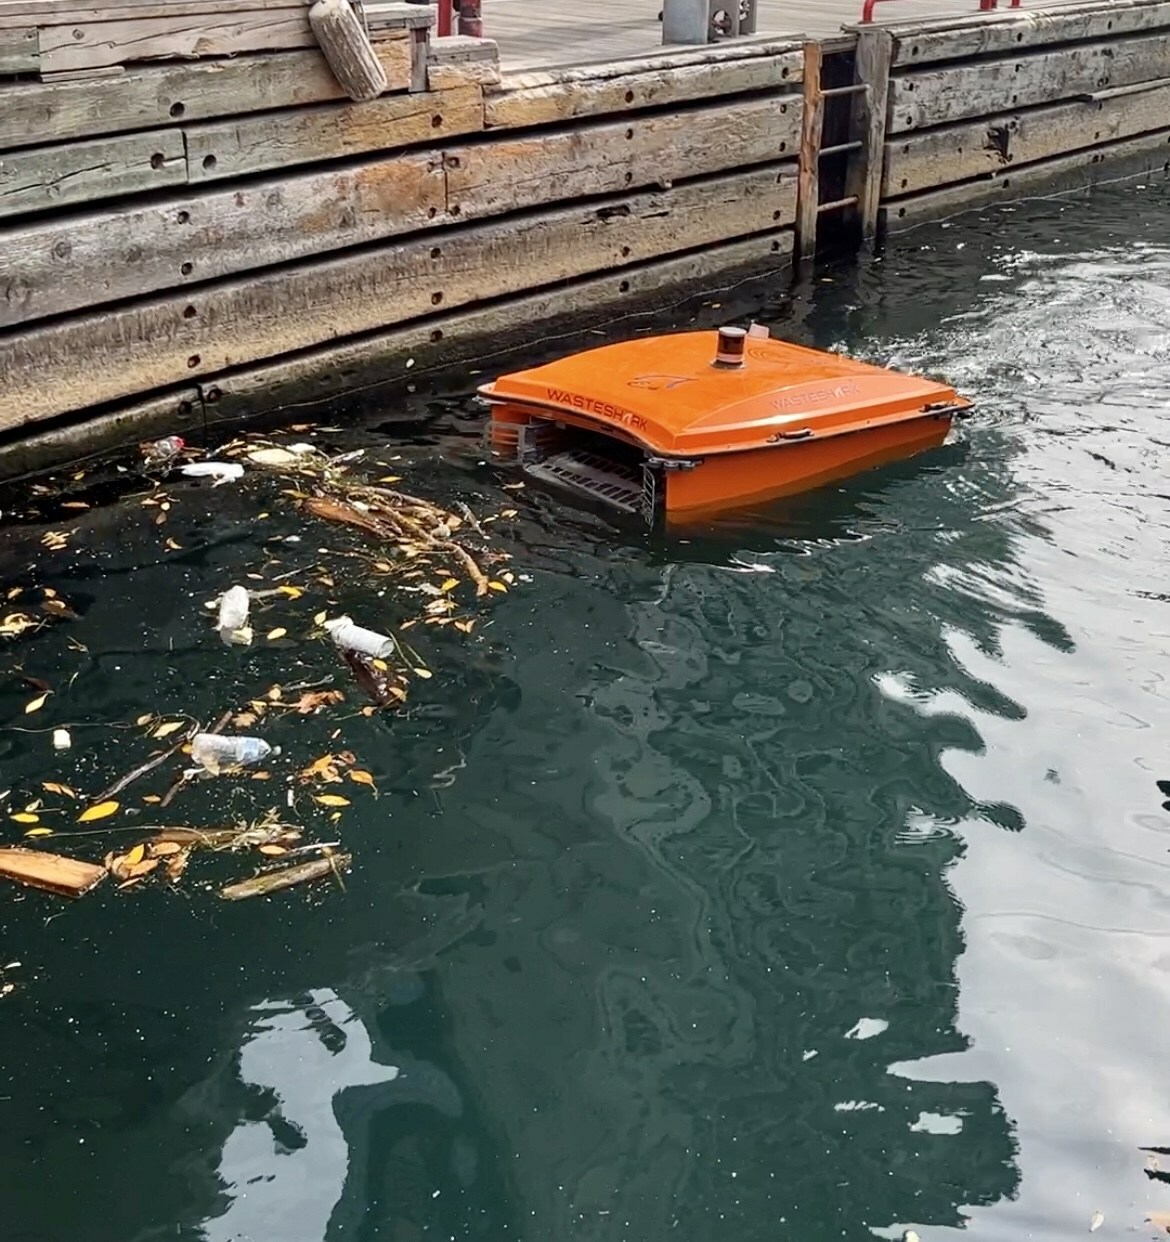 多伦多港口的垃圾捕捉设备清除了43公斤的塑料污染